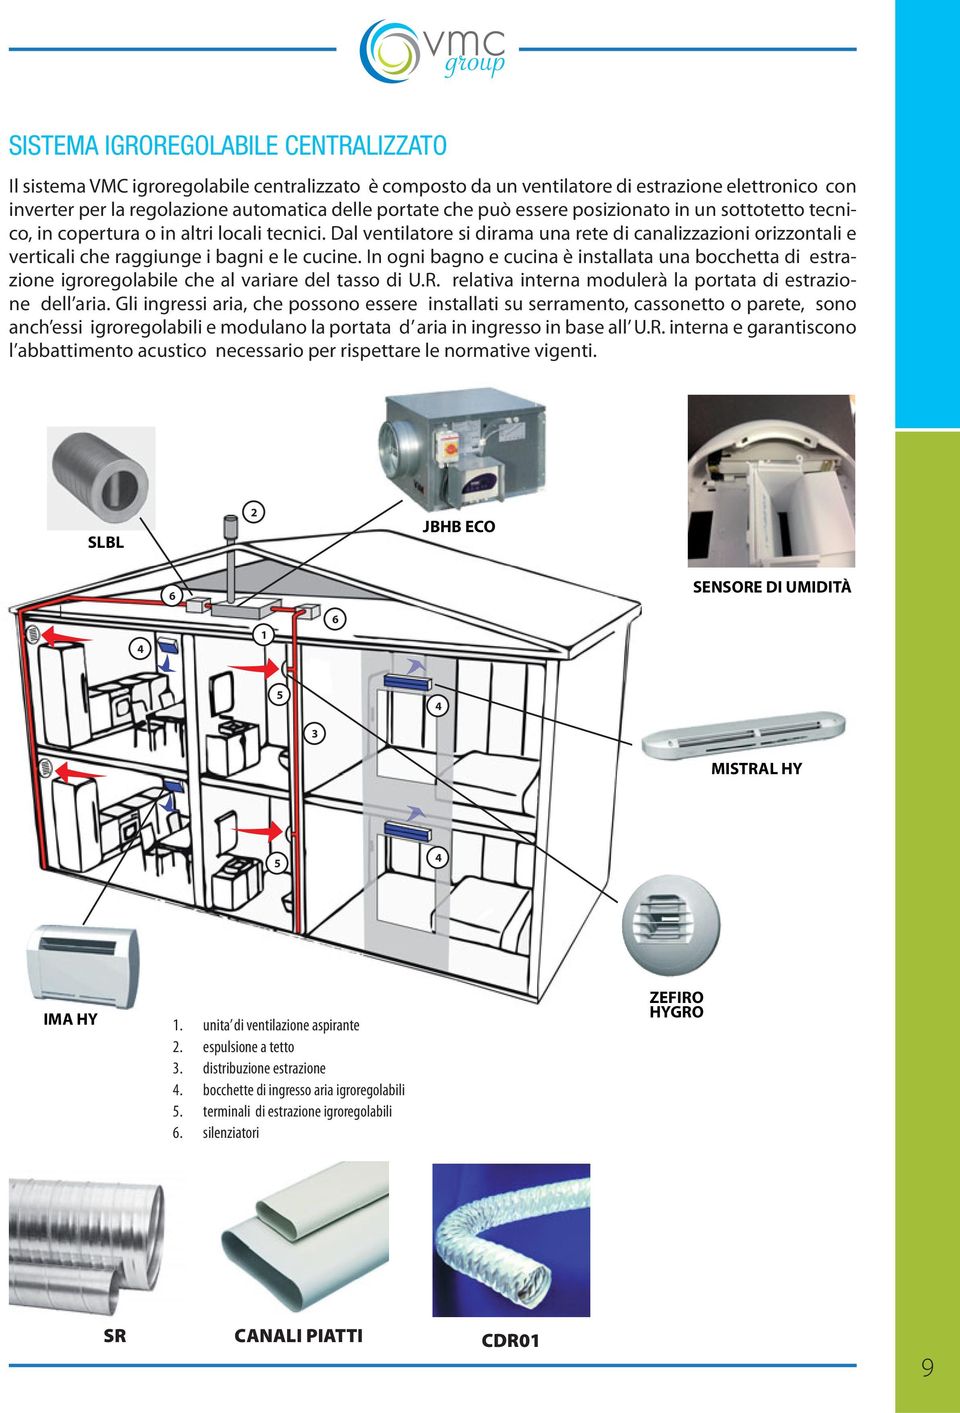 In ogni bagno e cucina è installata una bocchetta di estrazione igroregolabile che al variare del tasso di U.R. relativa interna modulerà la portata di estrazione dell aria.